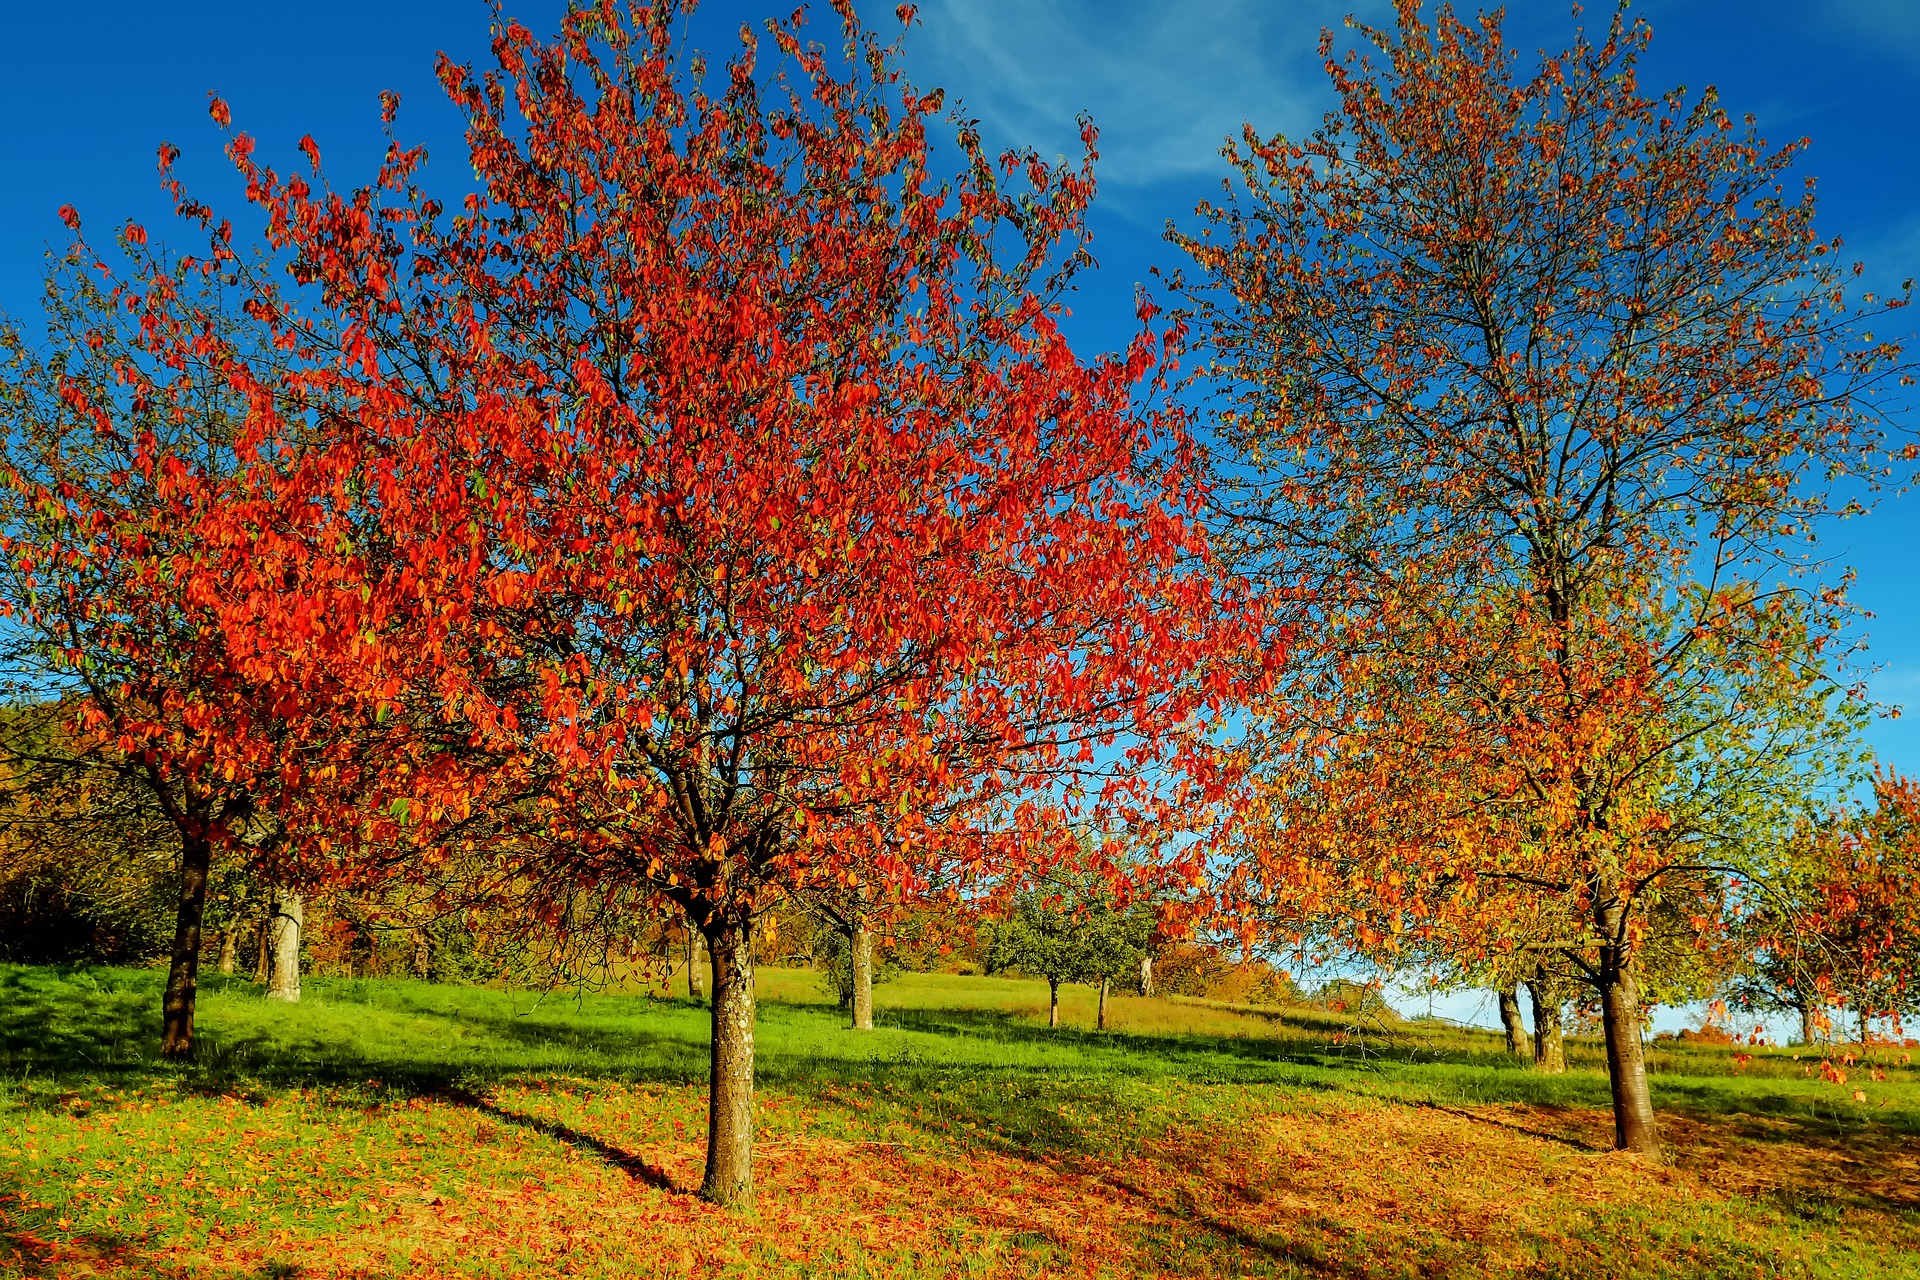 Le début de l'automne s'annonce encore plutôt doux, mais humide dans le sud de la France. © 1195798, Pixabay